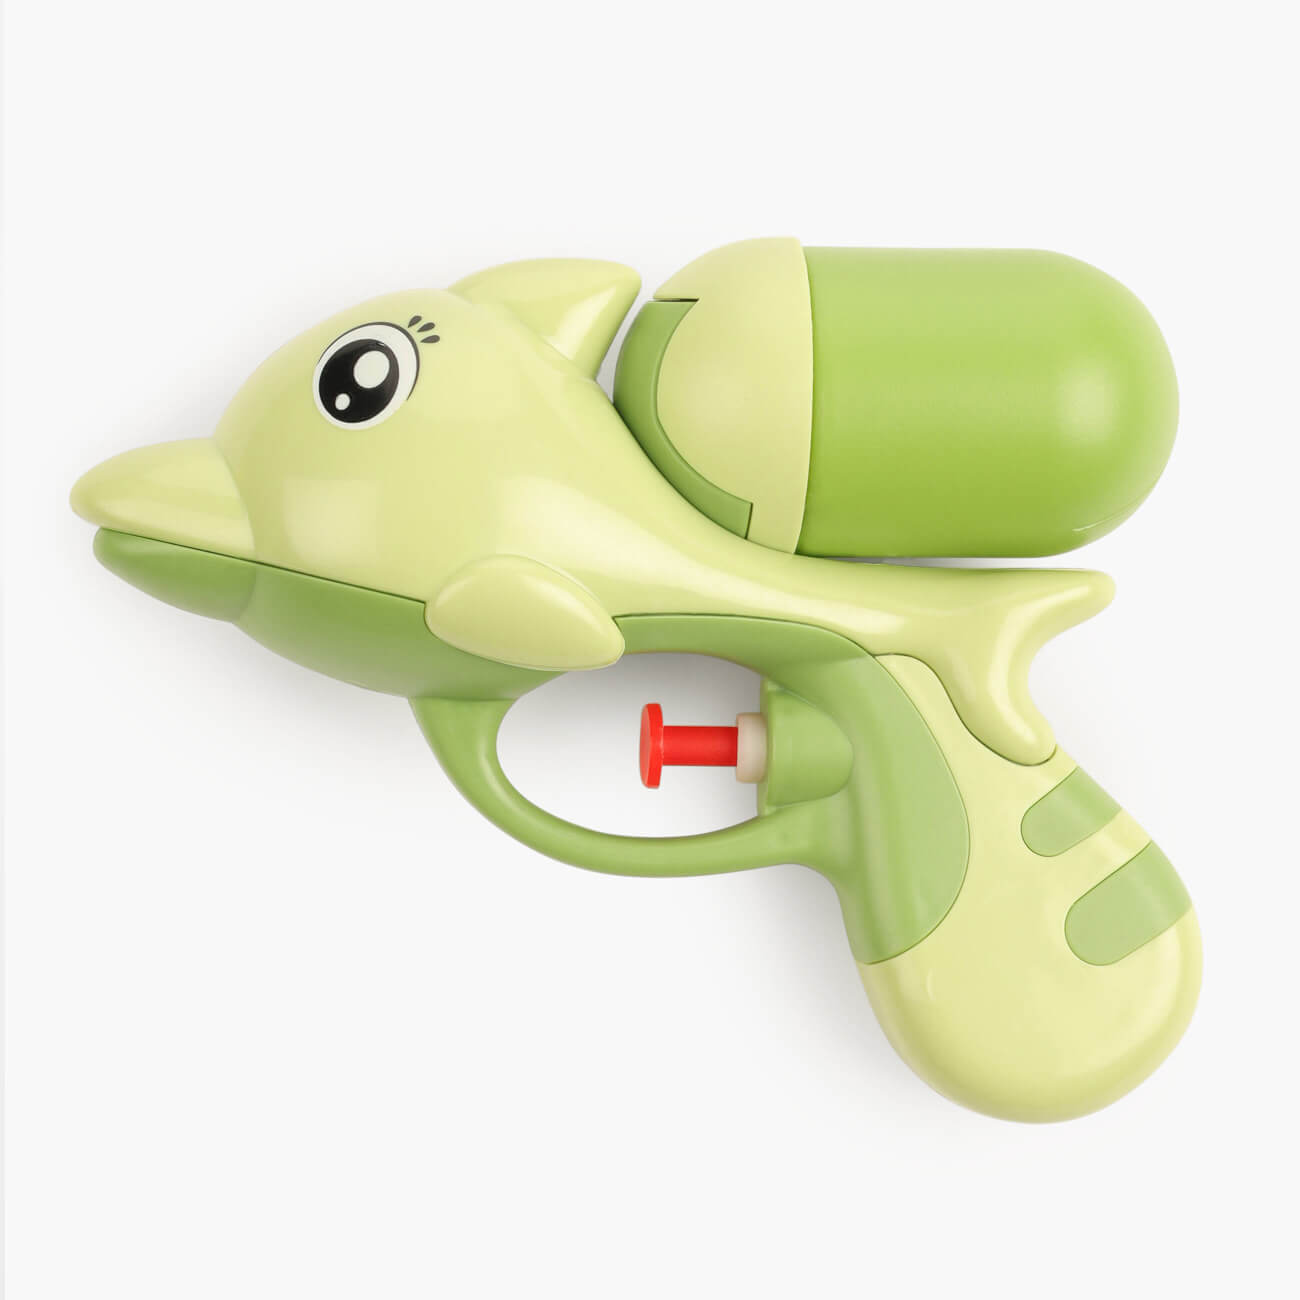 Пистолет водяной, 14 см, пластик, зеленый, Дельфин, Aquatic animals